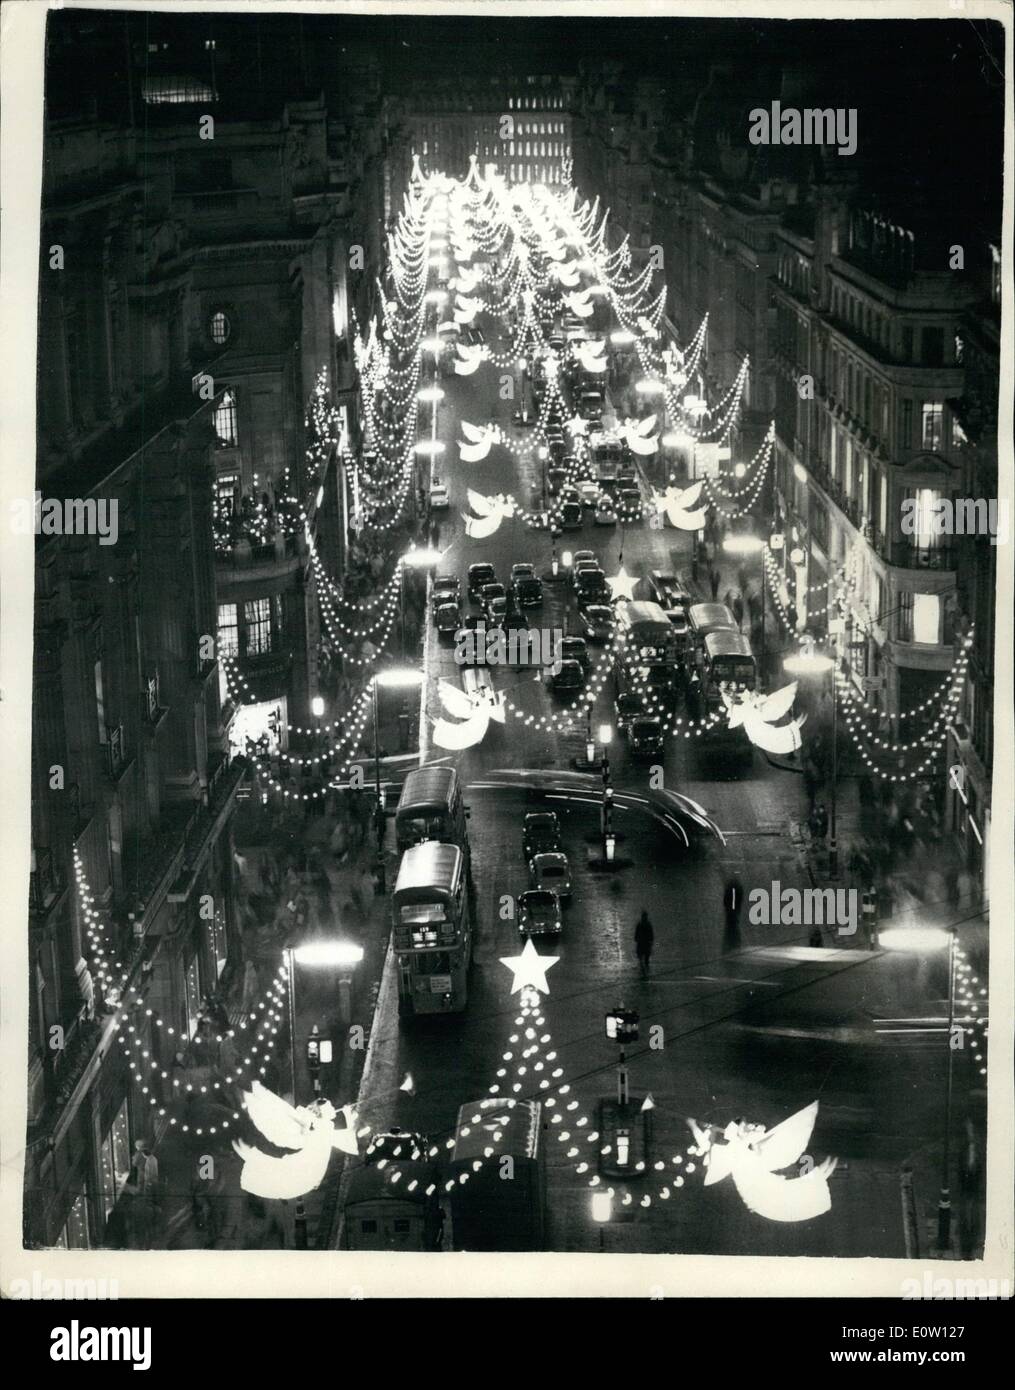 11 novembre 1960 - La mise en route des illuminations de Noël dans l'Ouest - FIN : Les illuminations de Noël dans la région de Oxford street et Banque D'Images